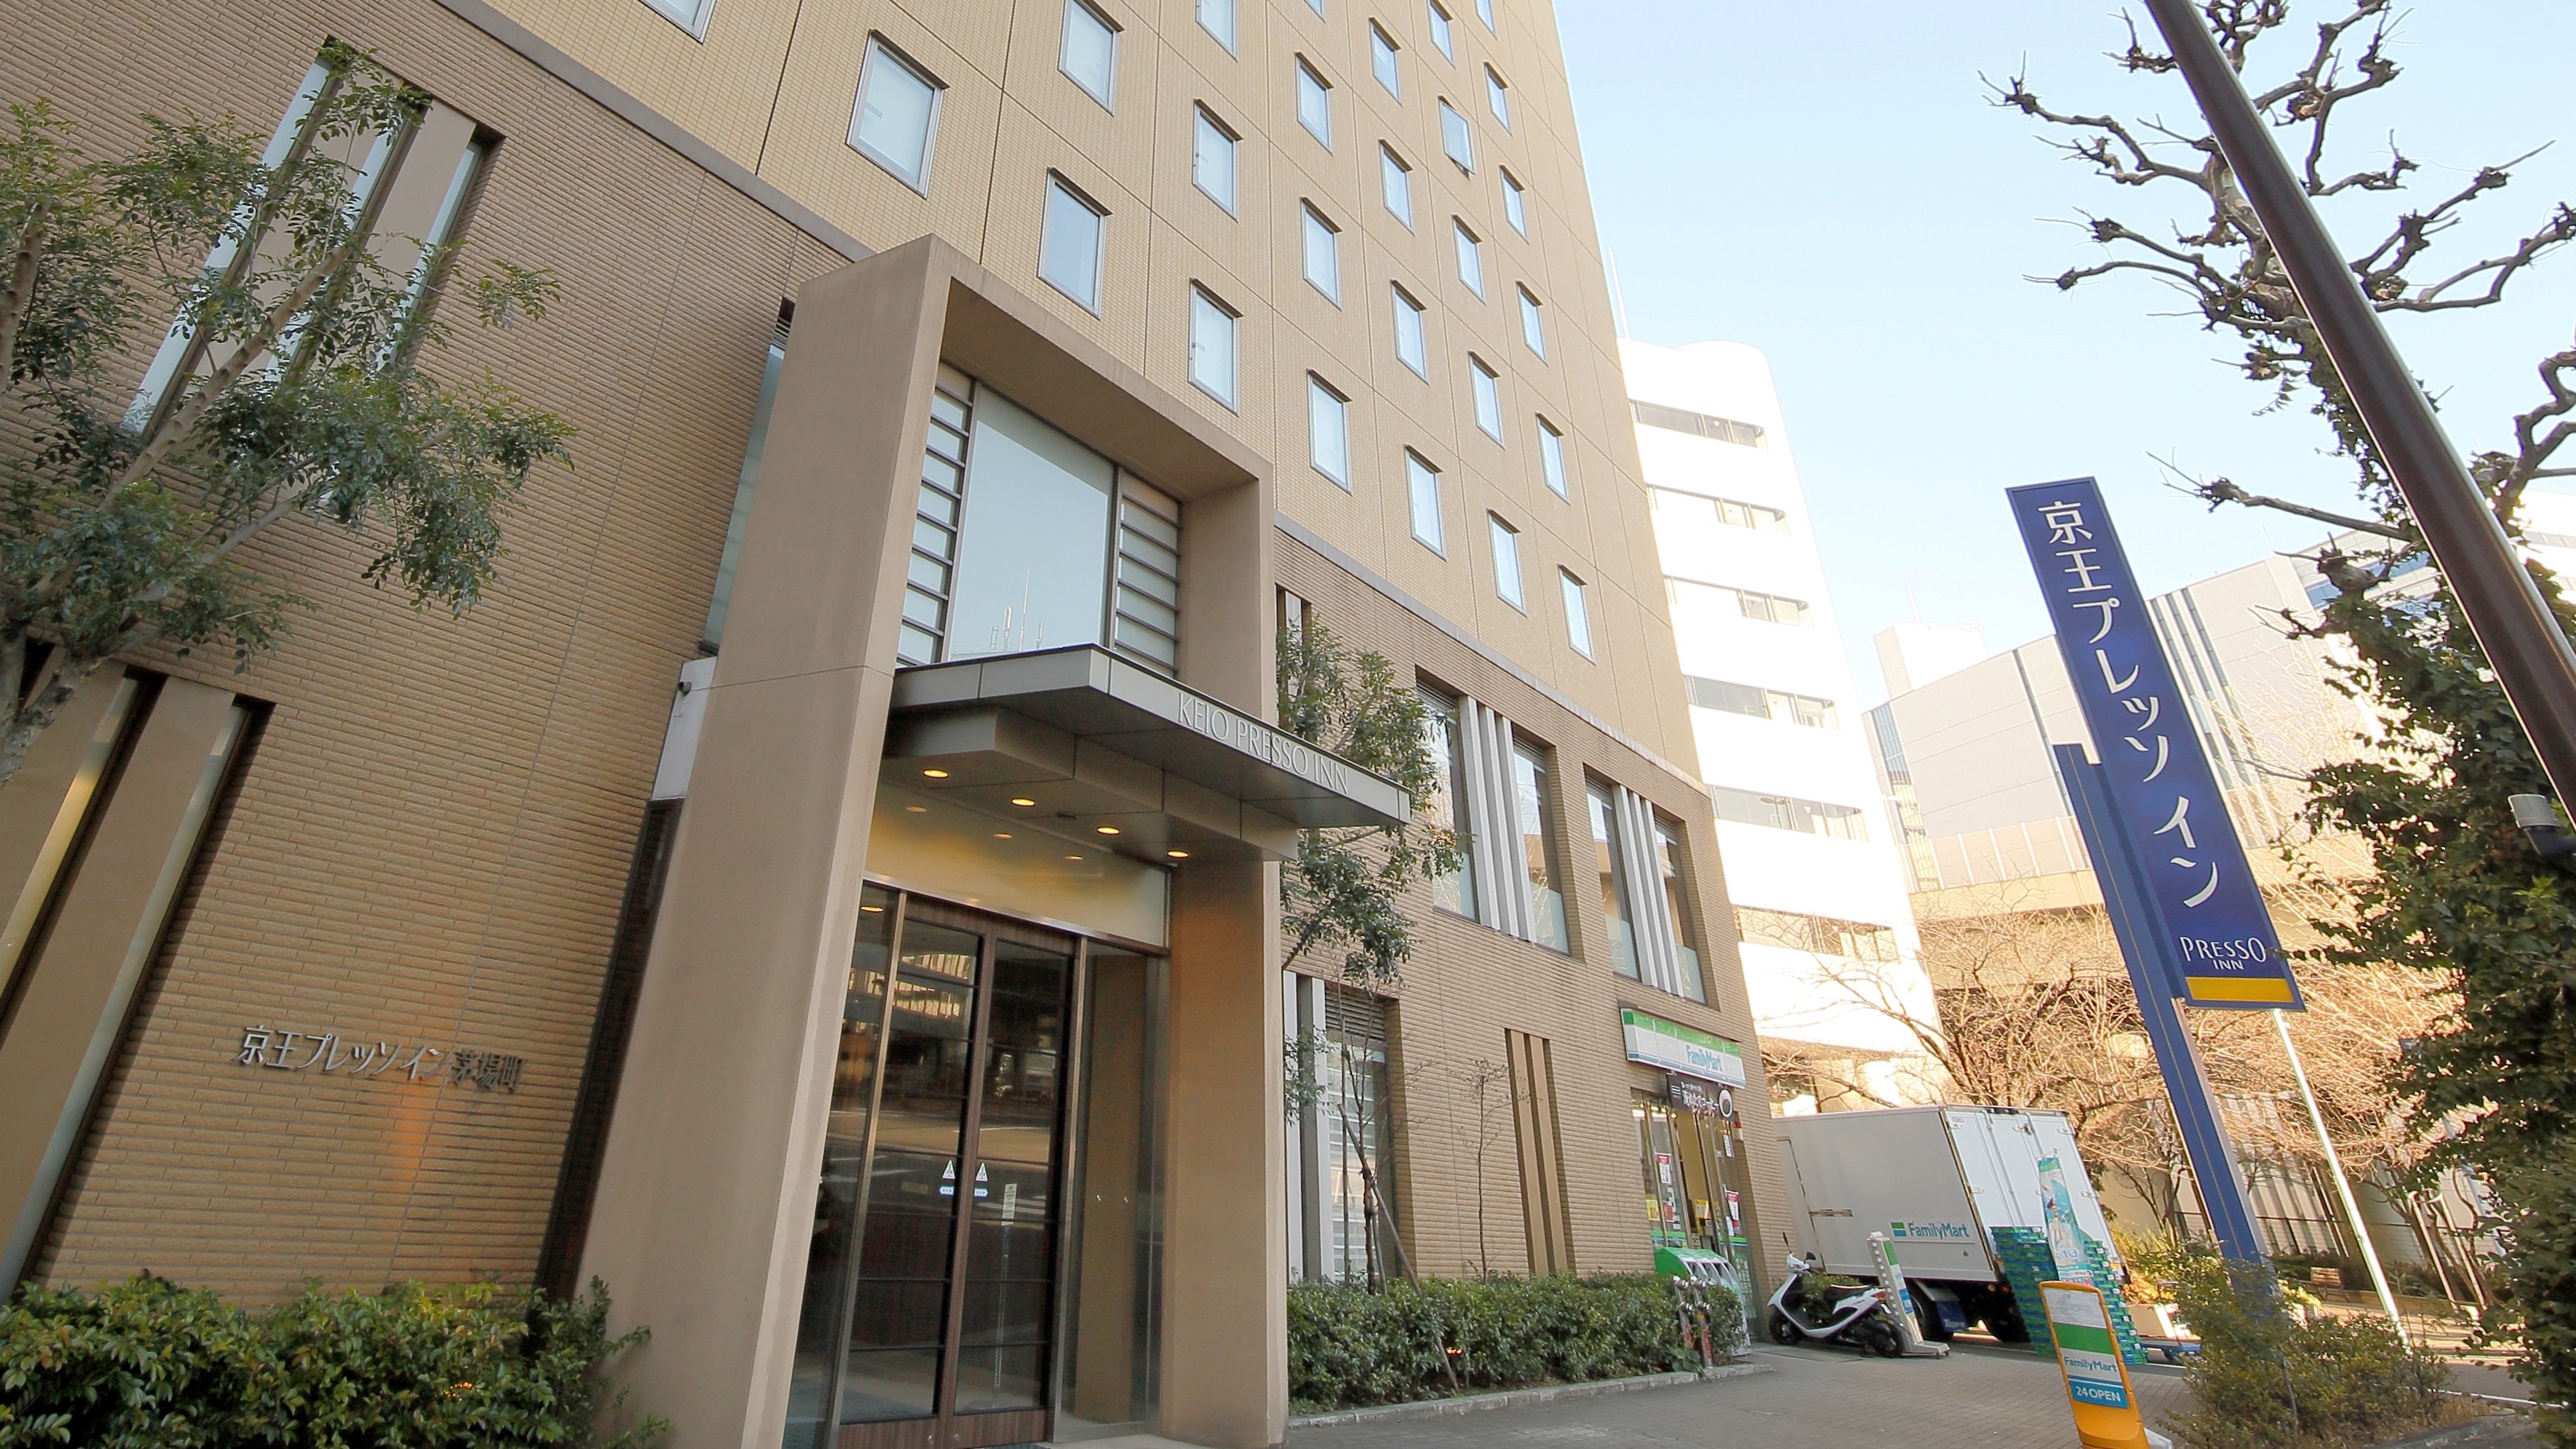 TDRの東京旅行で学生におすすめのホテル